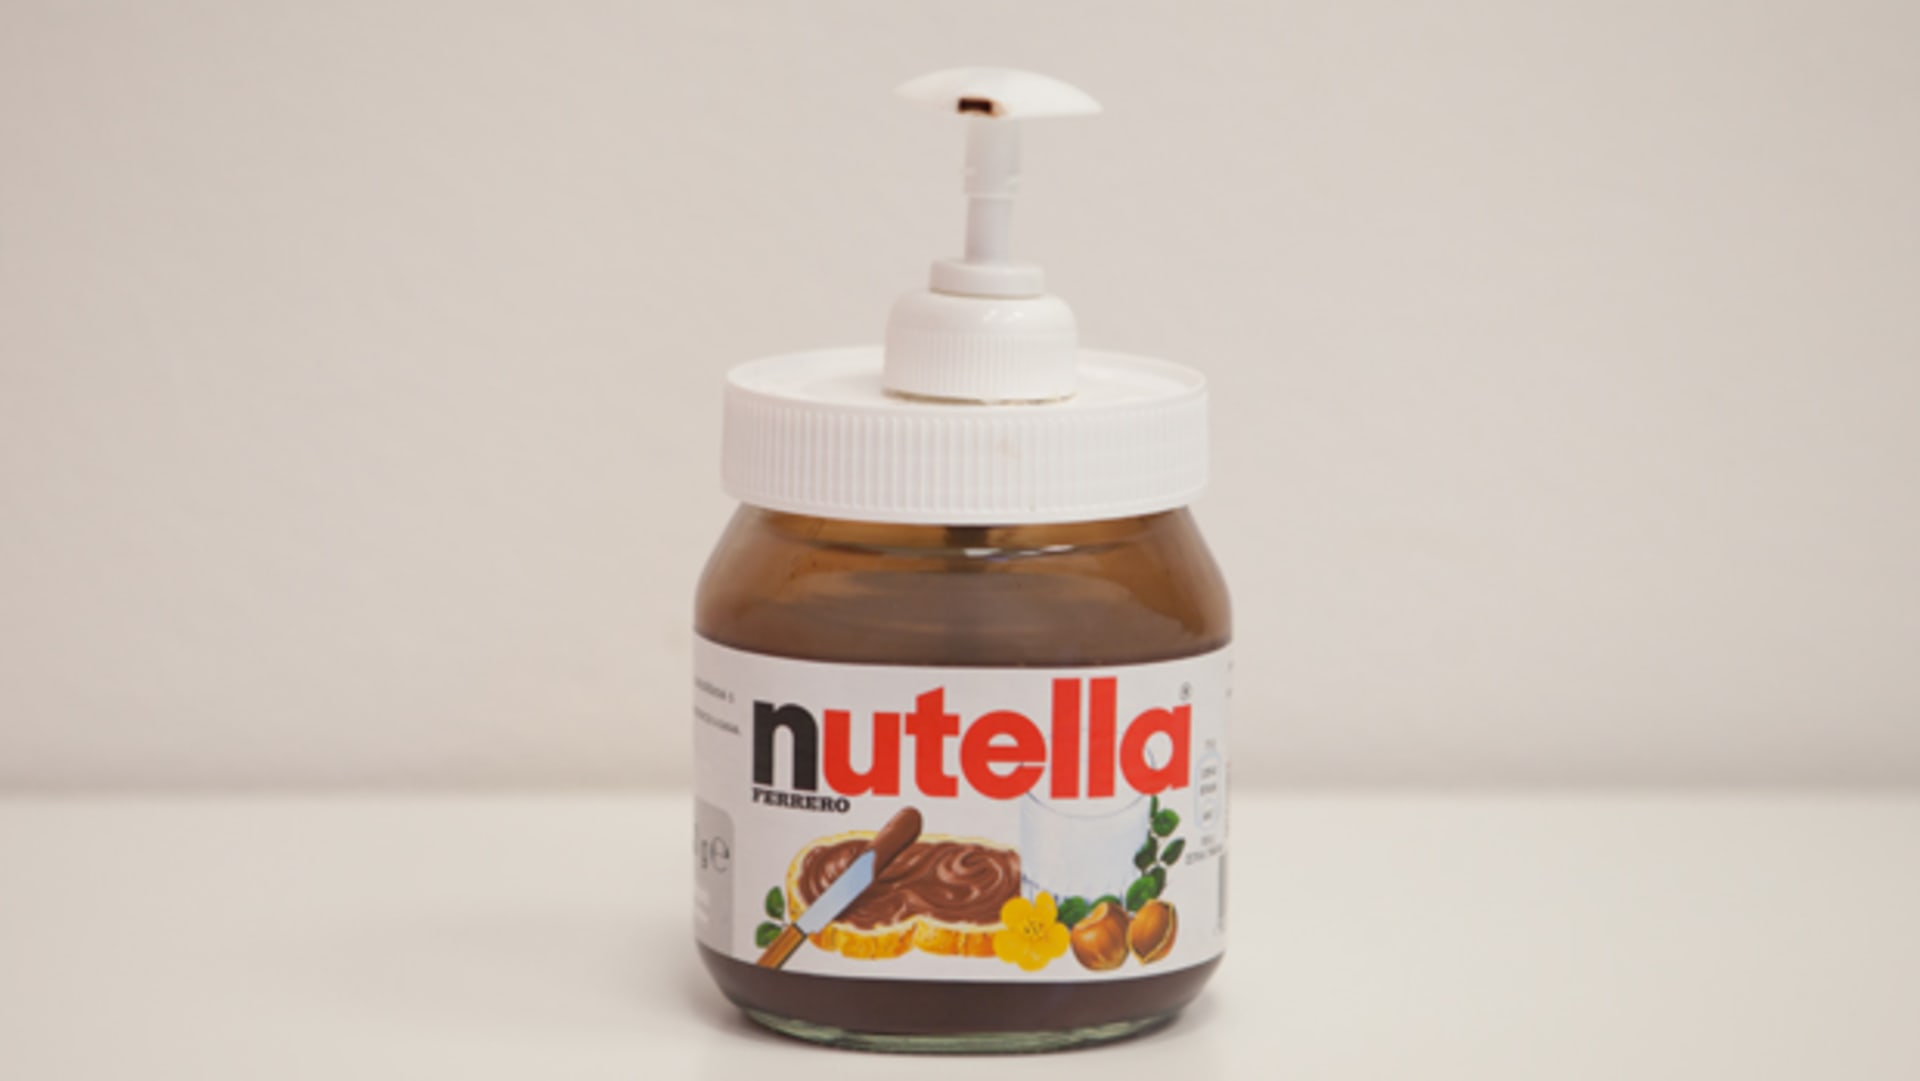 Vychytávky - Nutella, nebo mýdlo